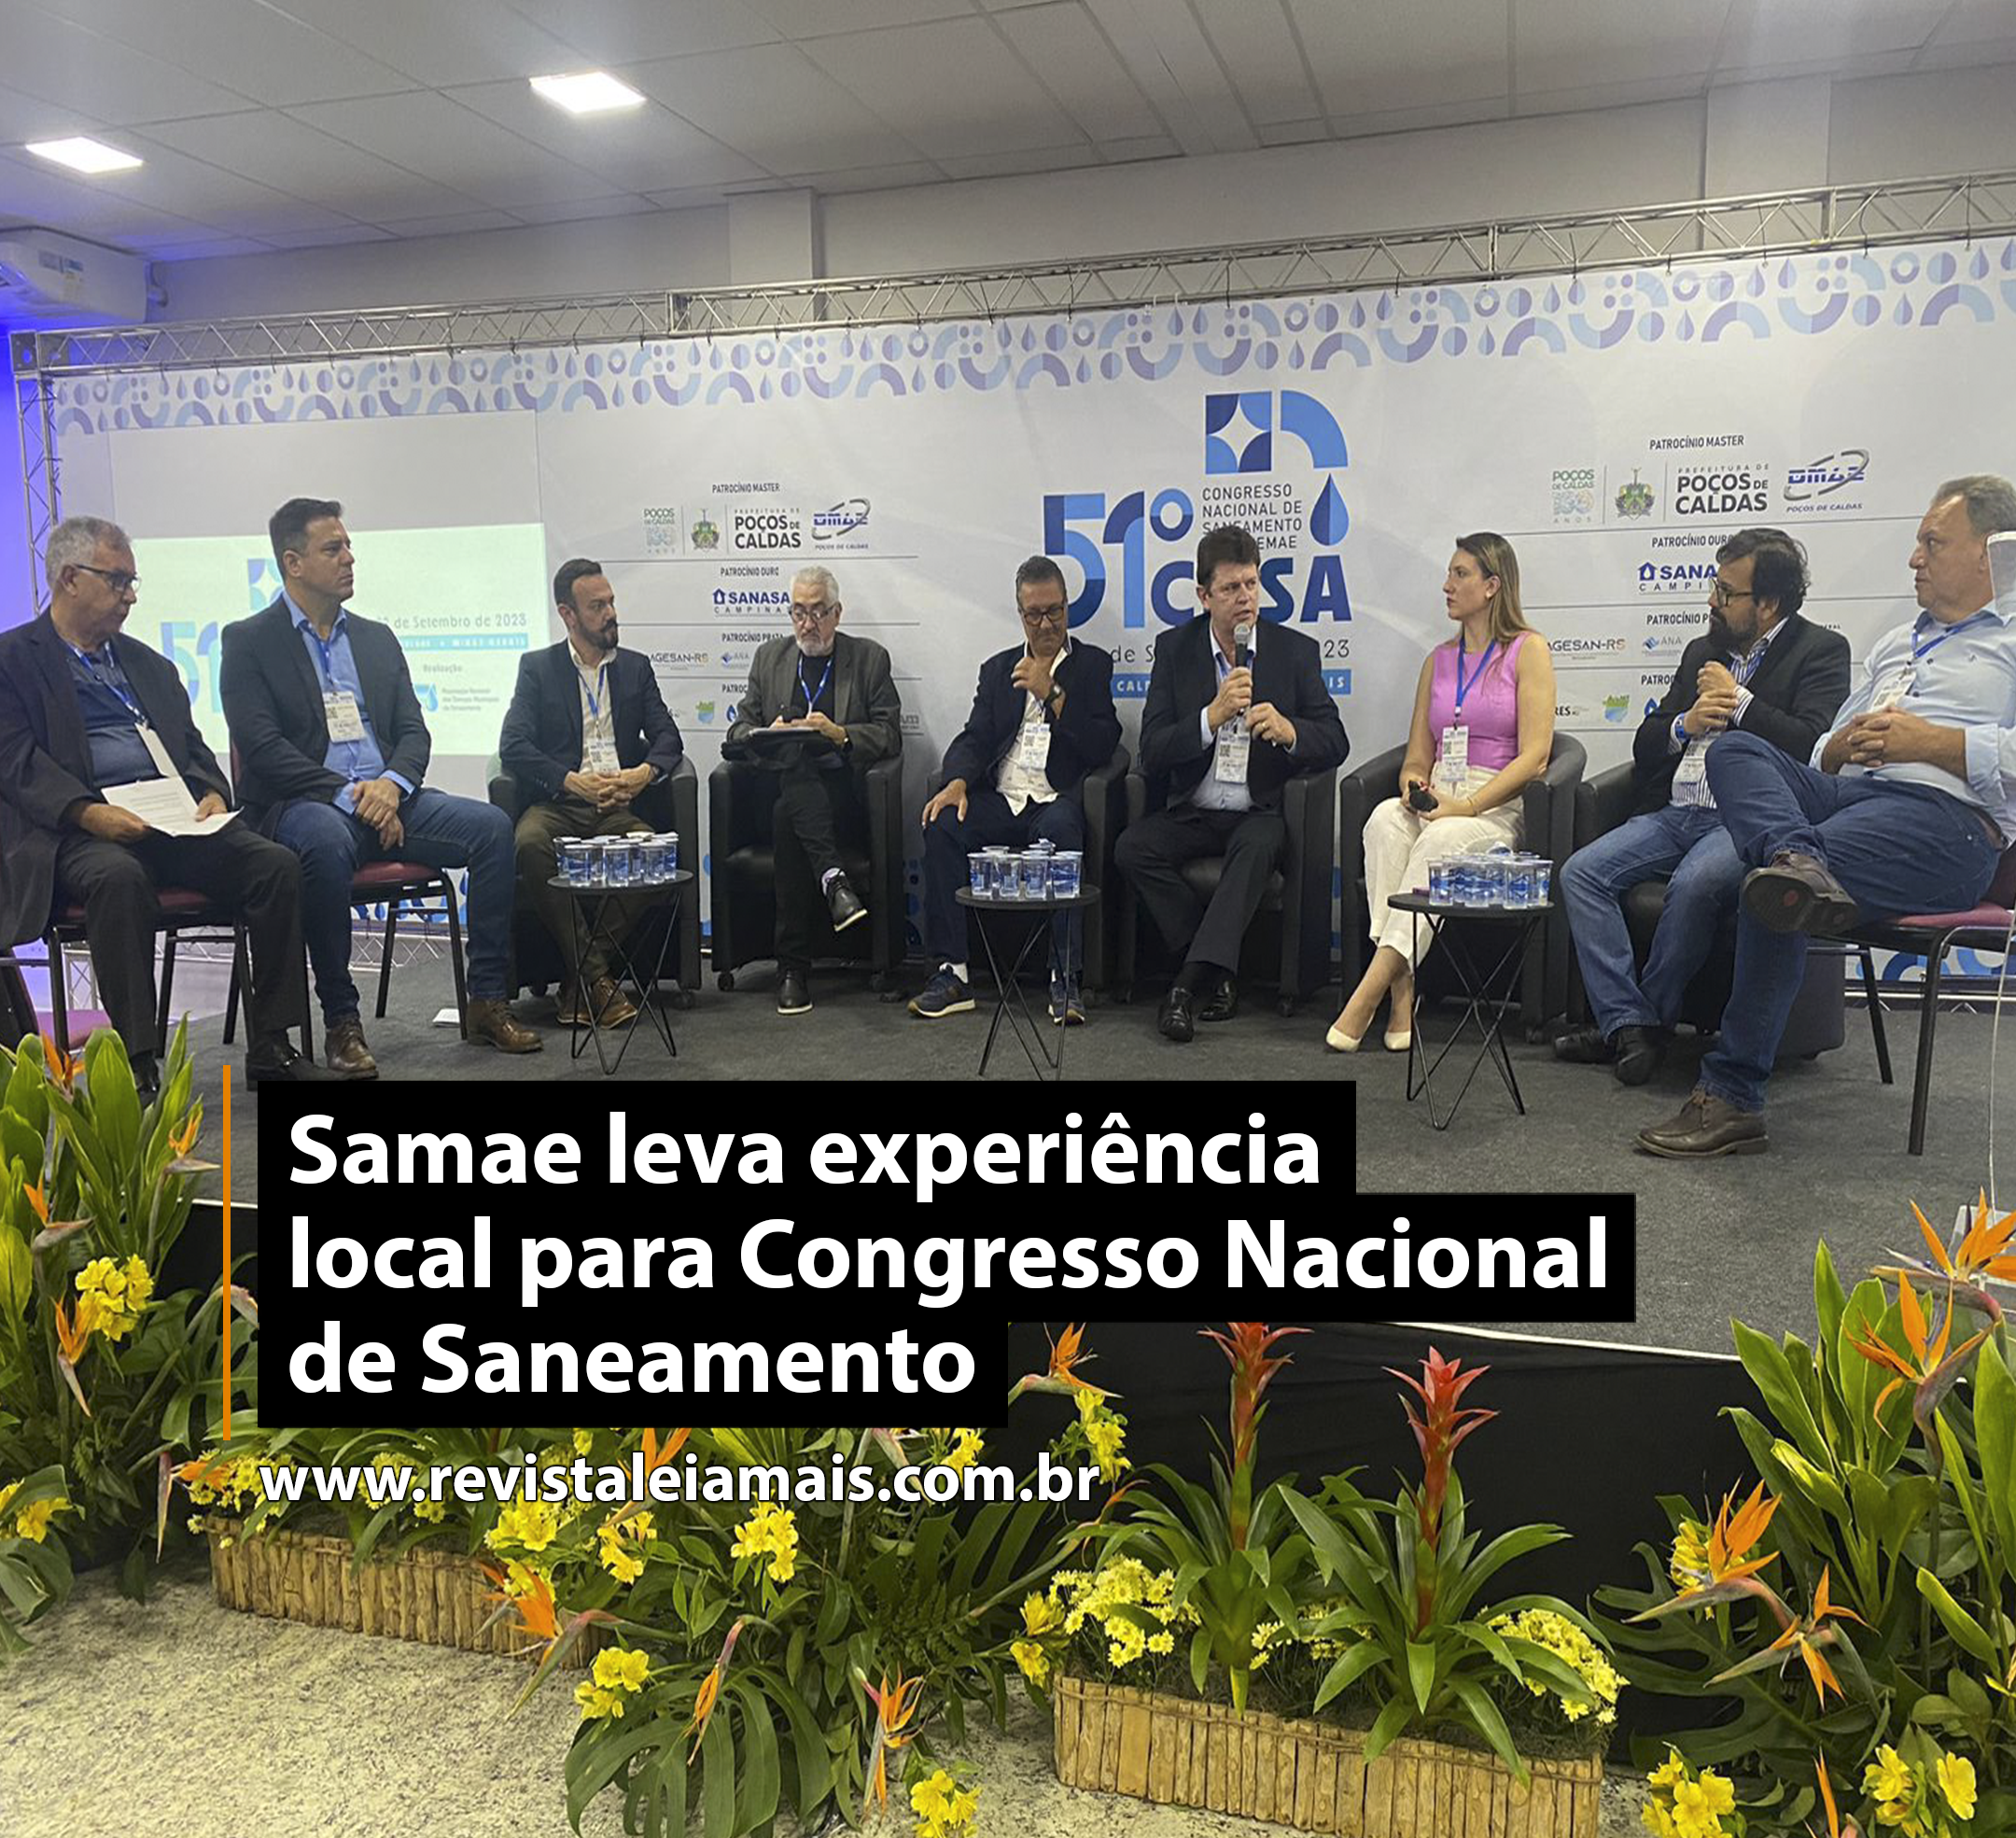 Samae leva experiência local para Congresso Nacional de Saneamento